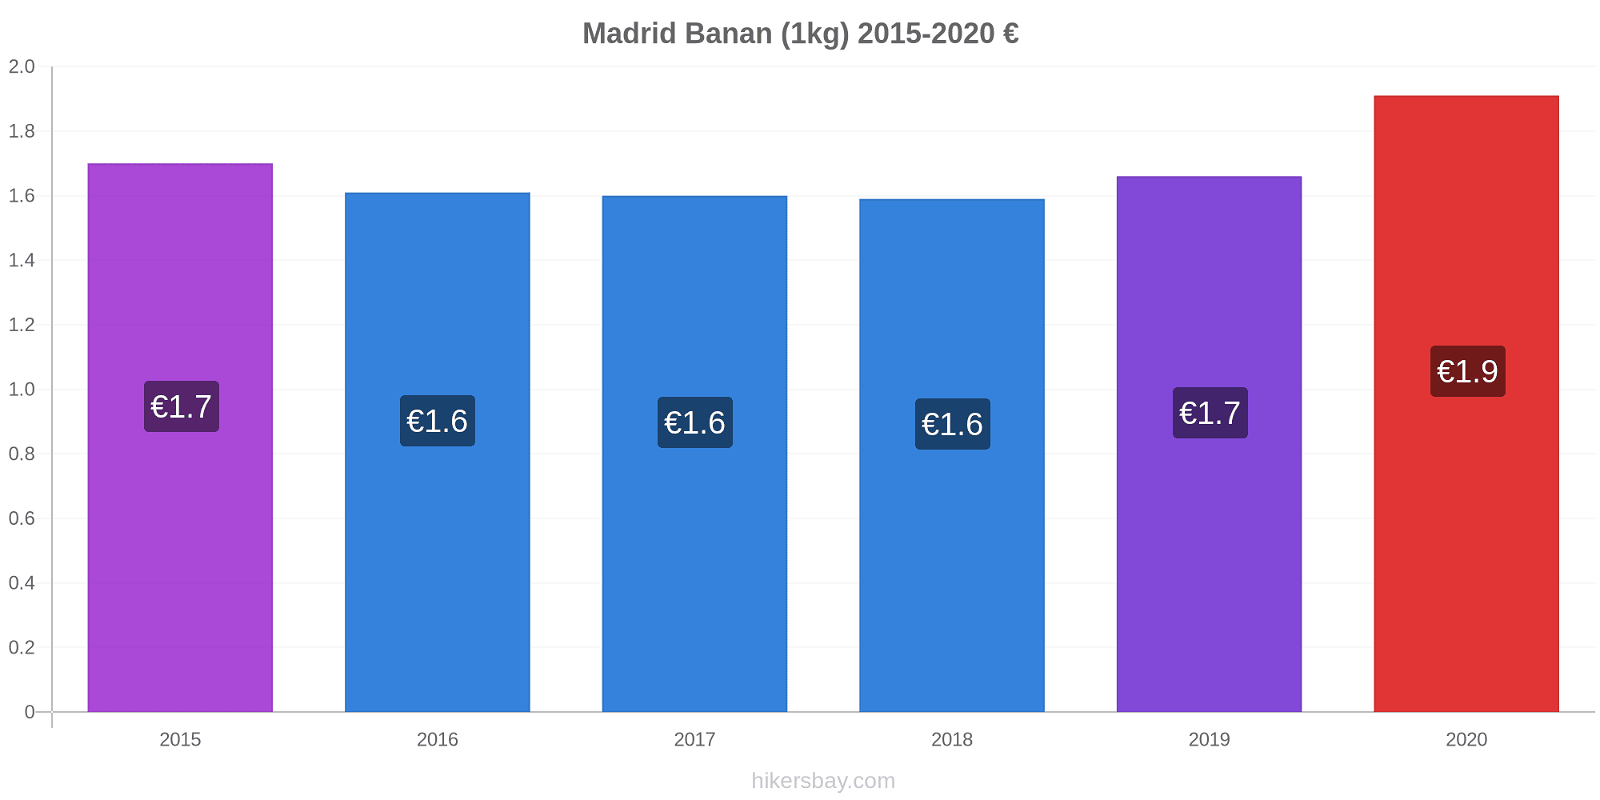 Madrid prisændringer Banan (1kg) hikersbay.com